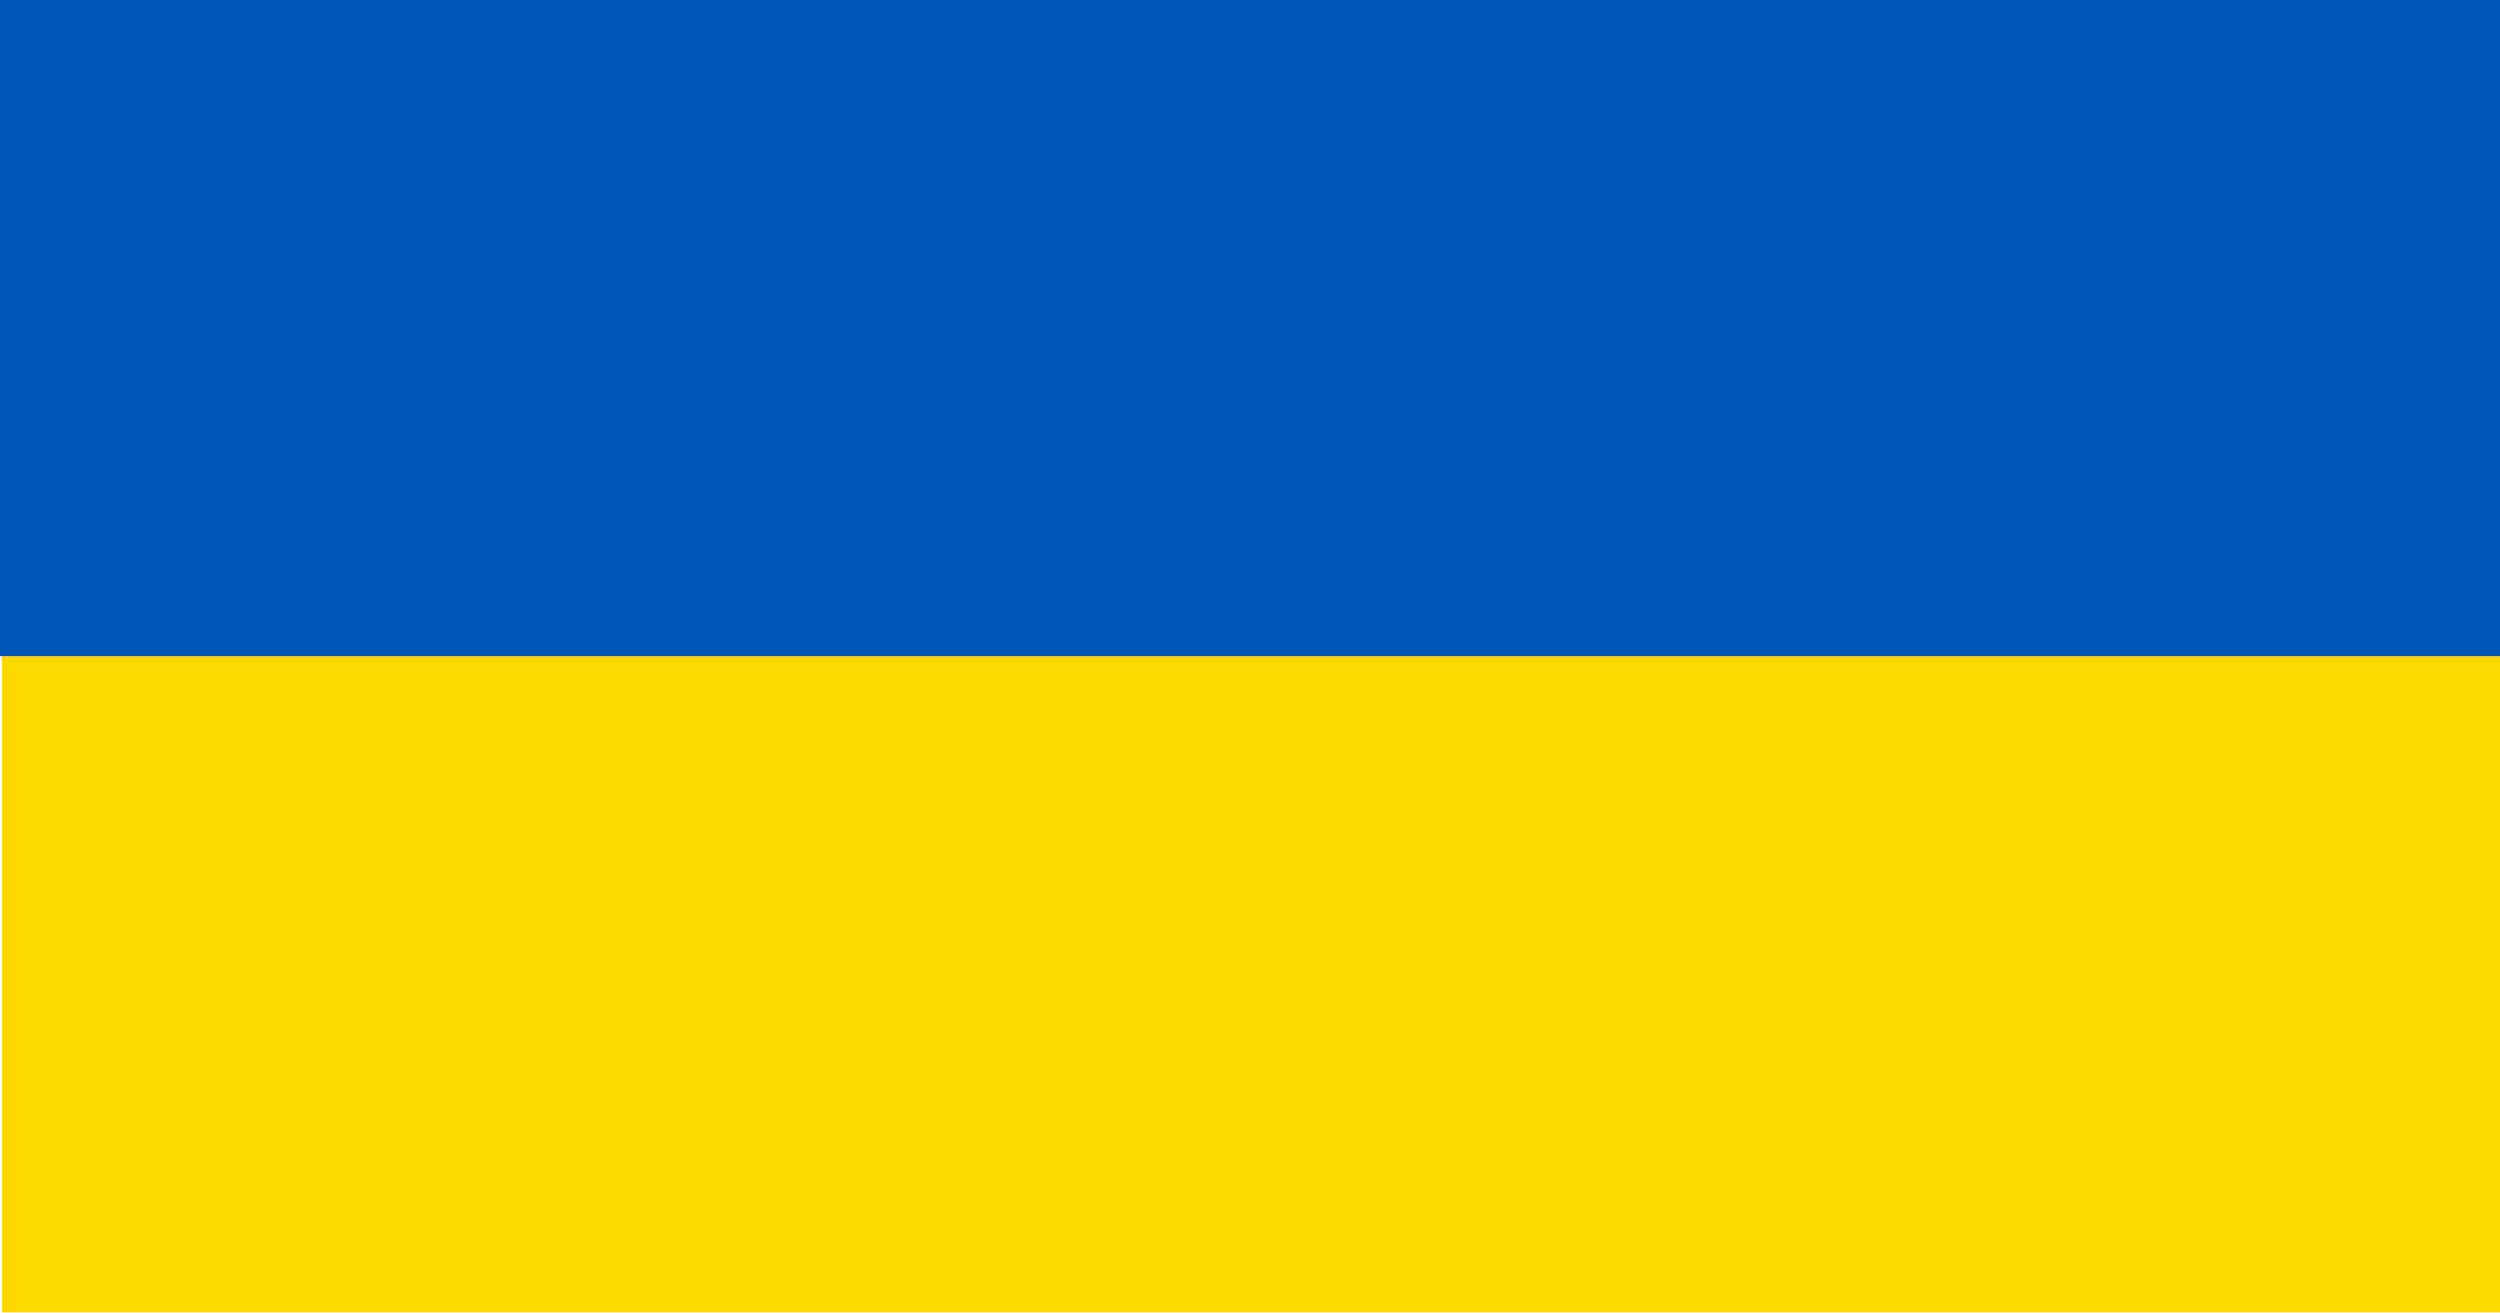 Ukrainas flagga som är gul och blå.